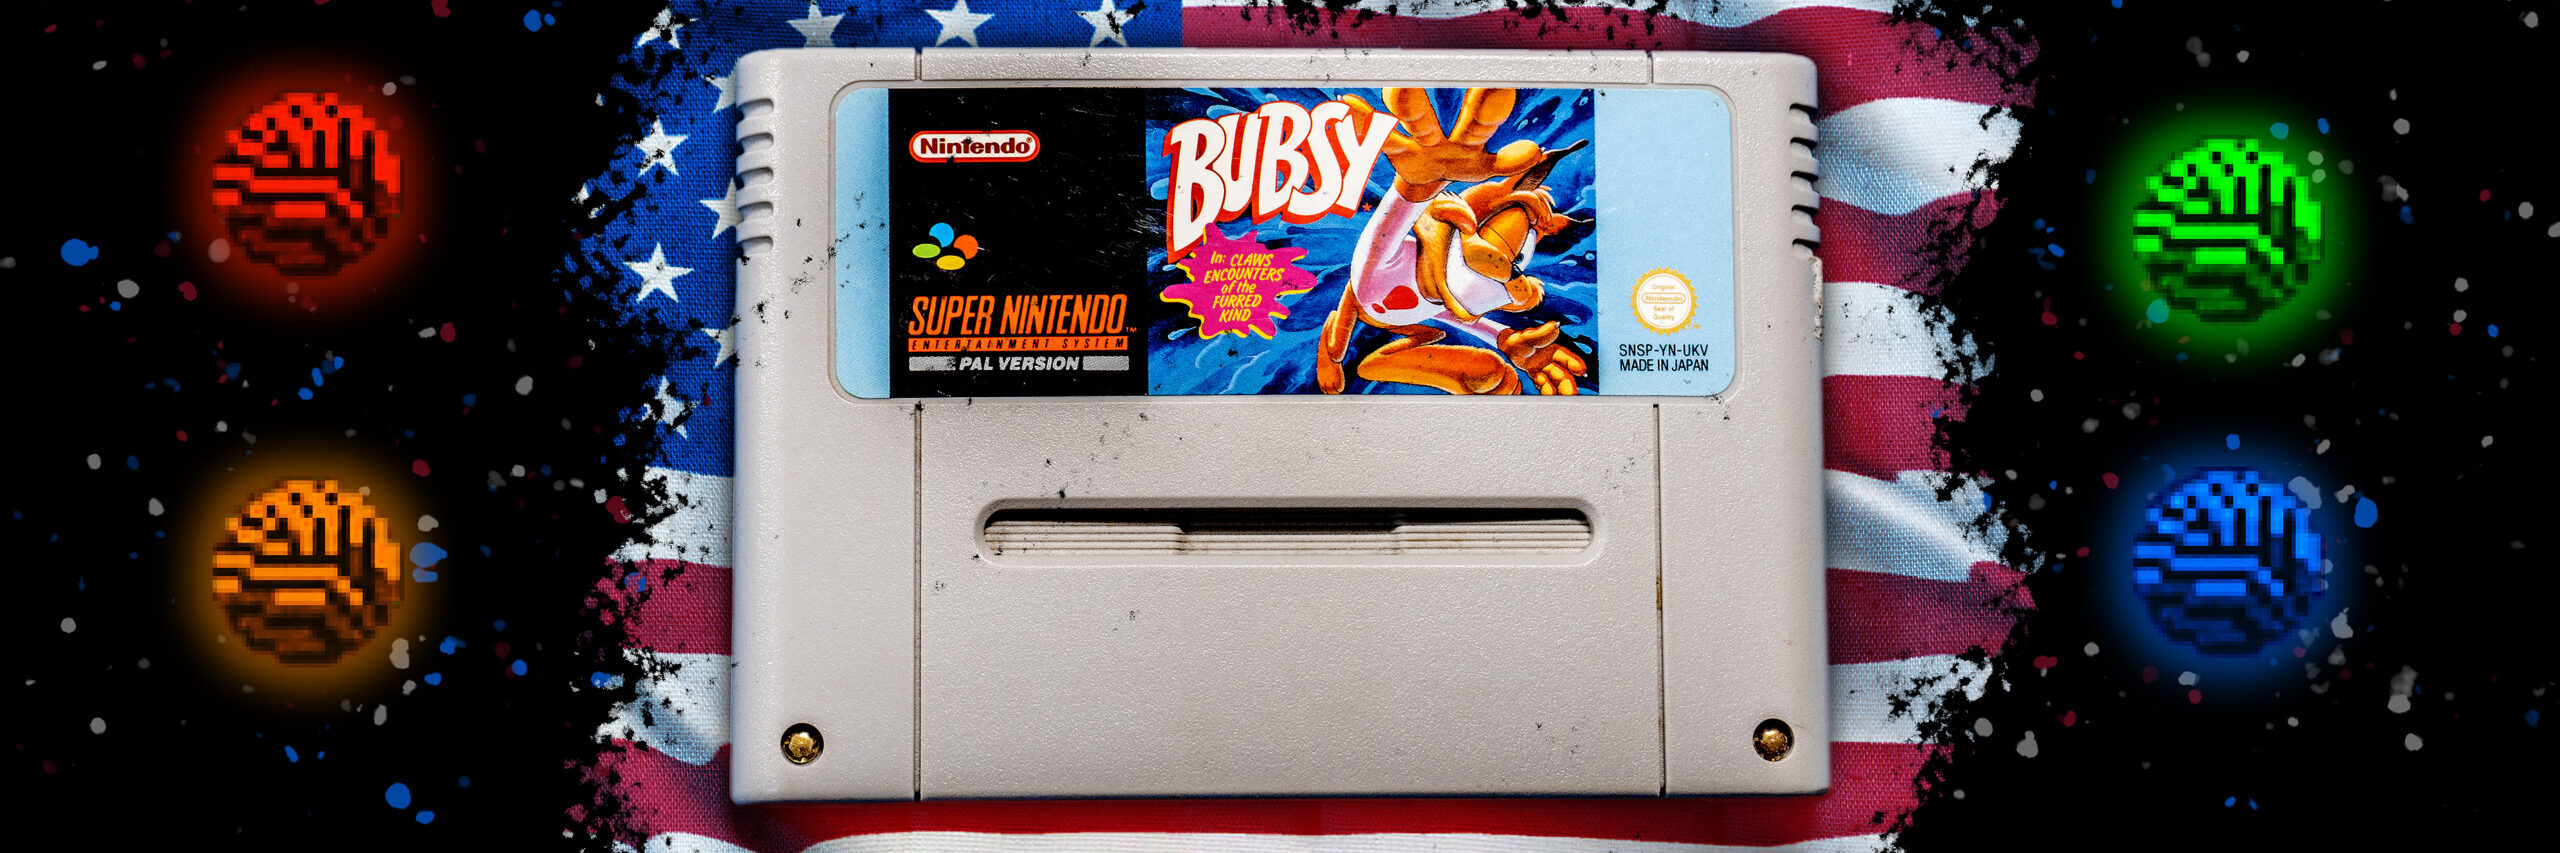 Bubsy videogioco SNES cartuccia